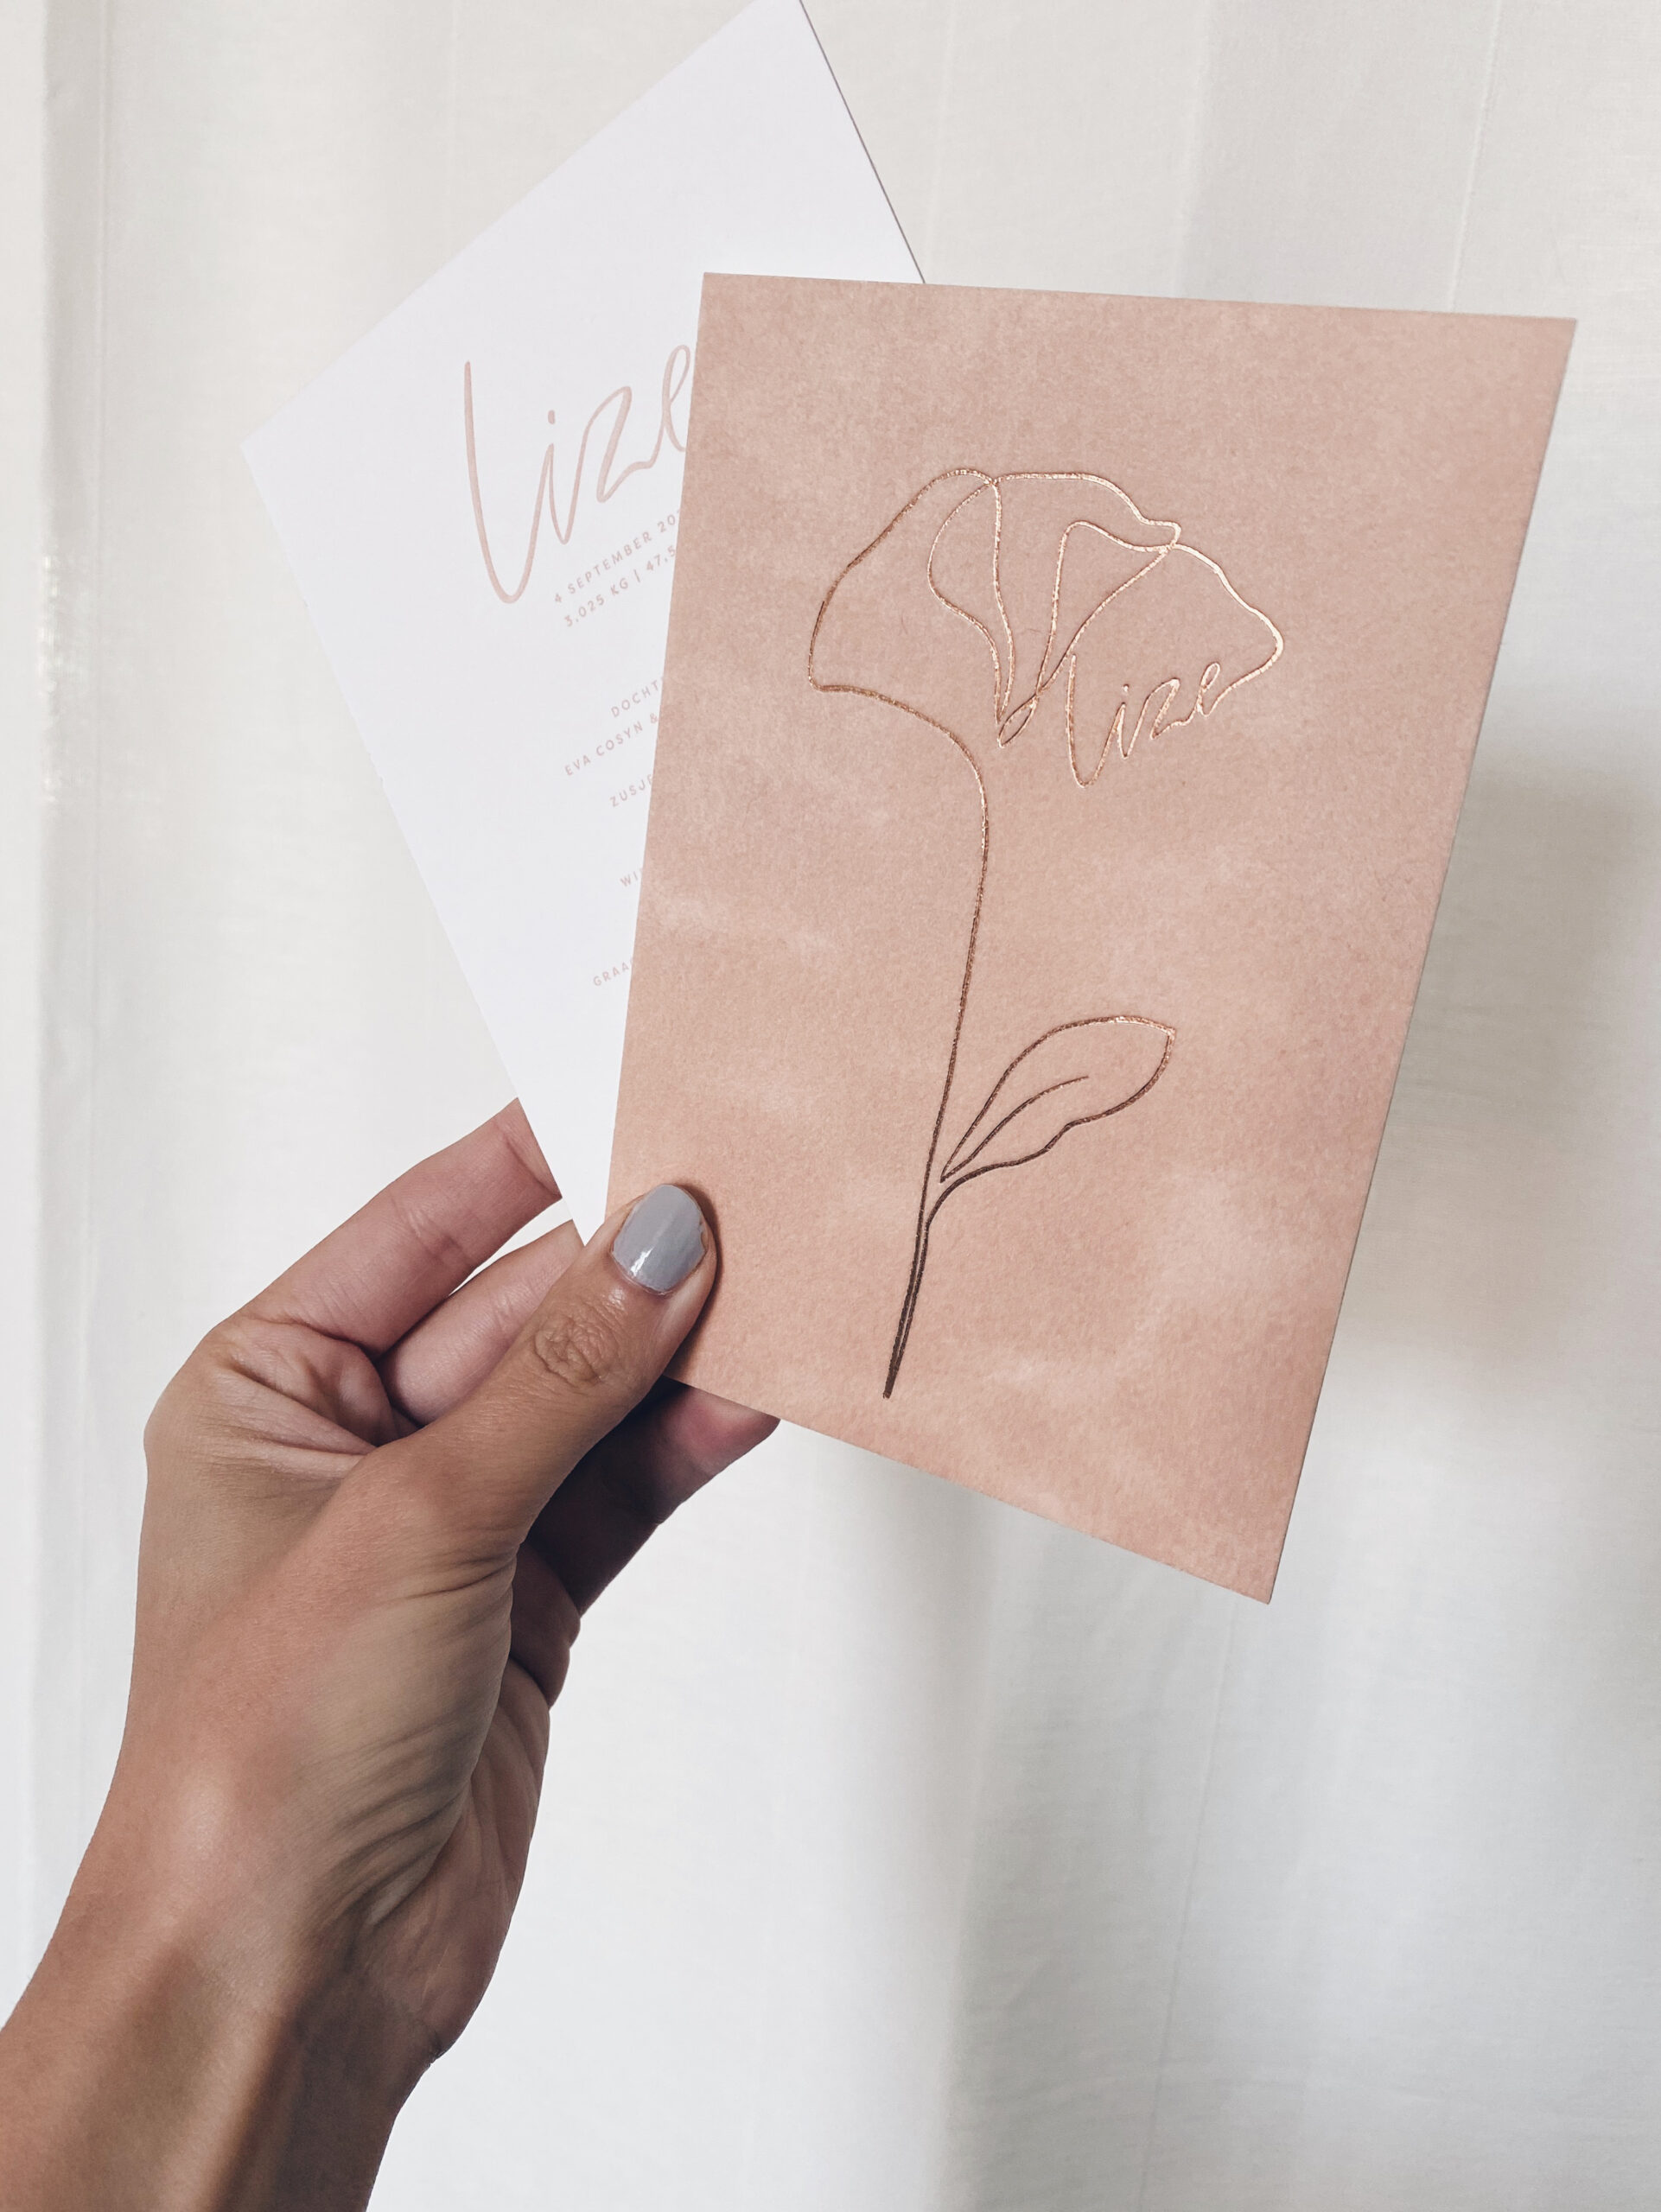 Geboortekaartje Lize - velvet geboortekaartje - studio mustique - studio blanche doopsuiker - letterpress rose gold rosegoud bloem - line drawing